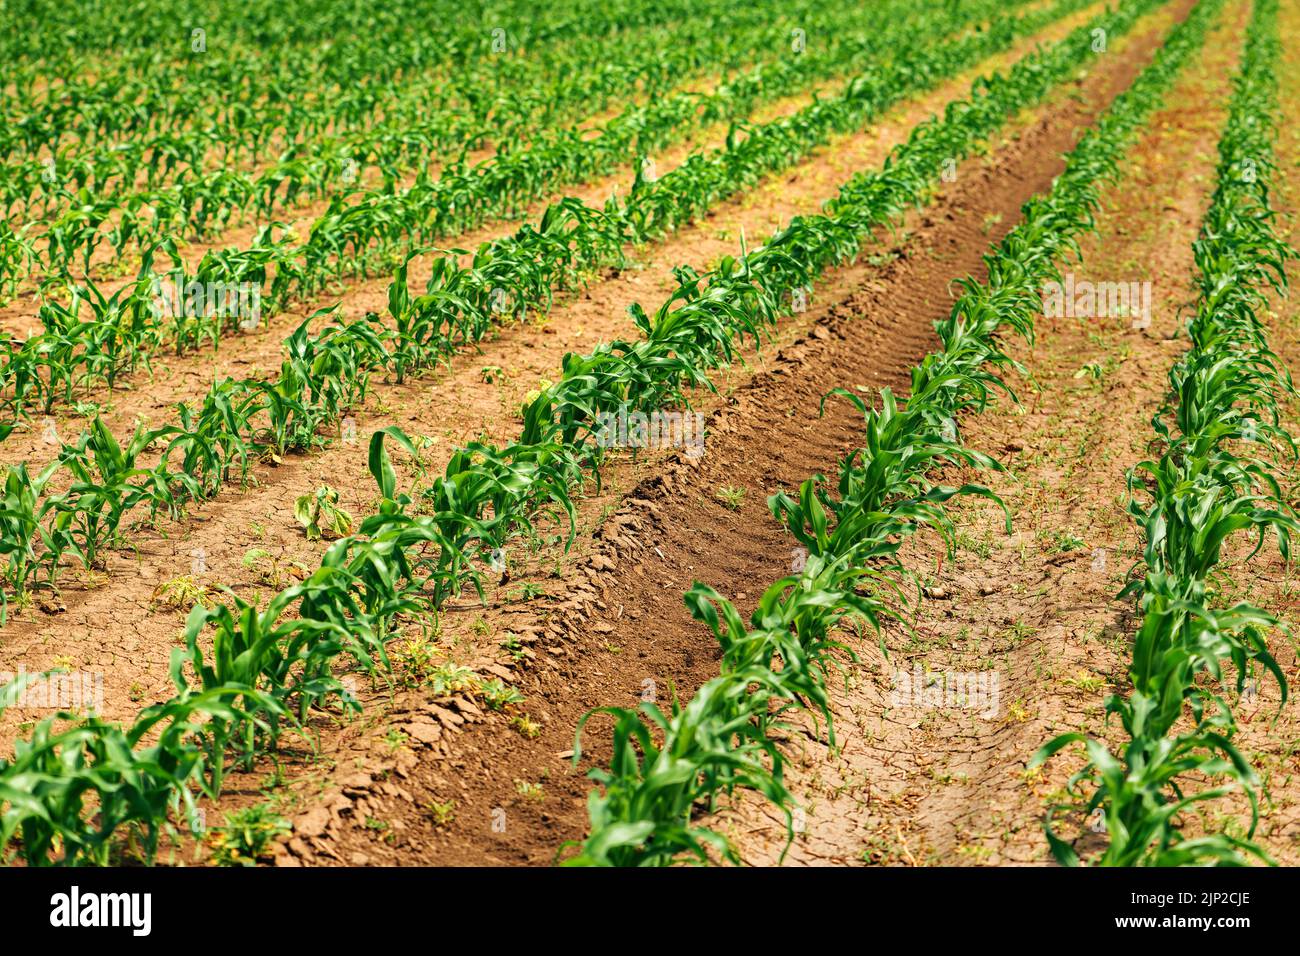 Plantación Zea mays, brotes de maíz en campo agrícola cultivado, enfoque selectivo Foto de stock